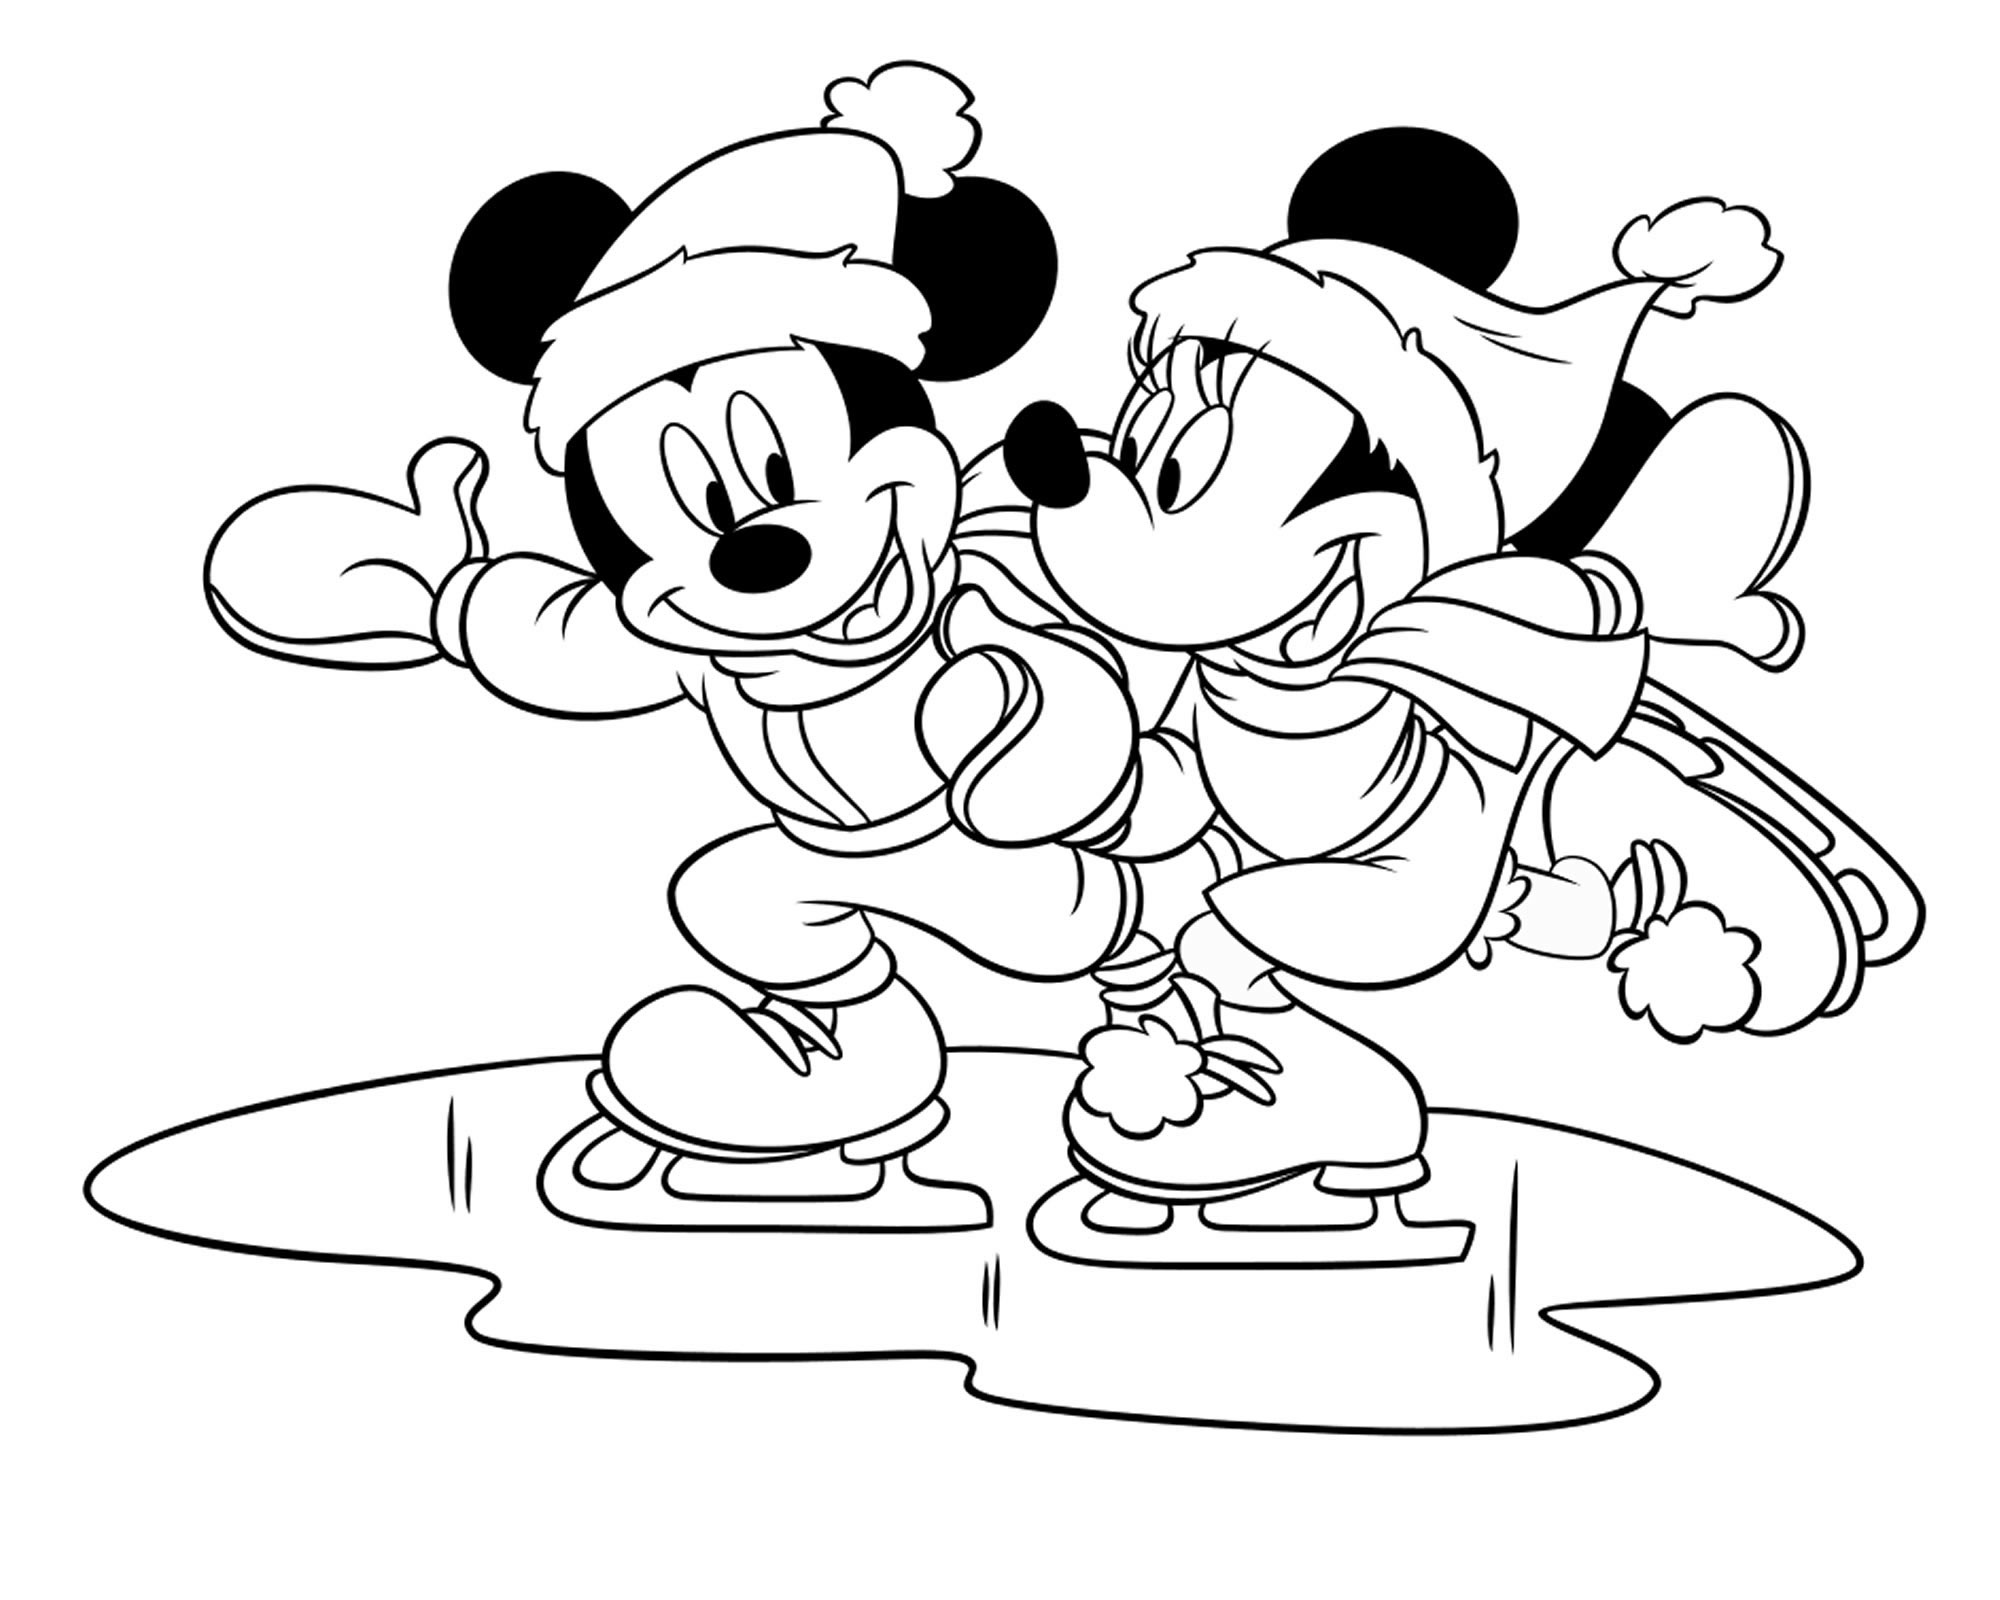 Микки и Минни на коньках раскраска для детей